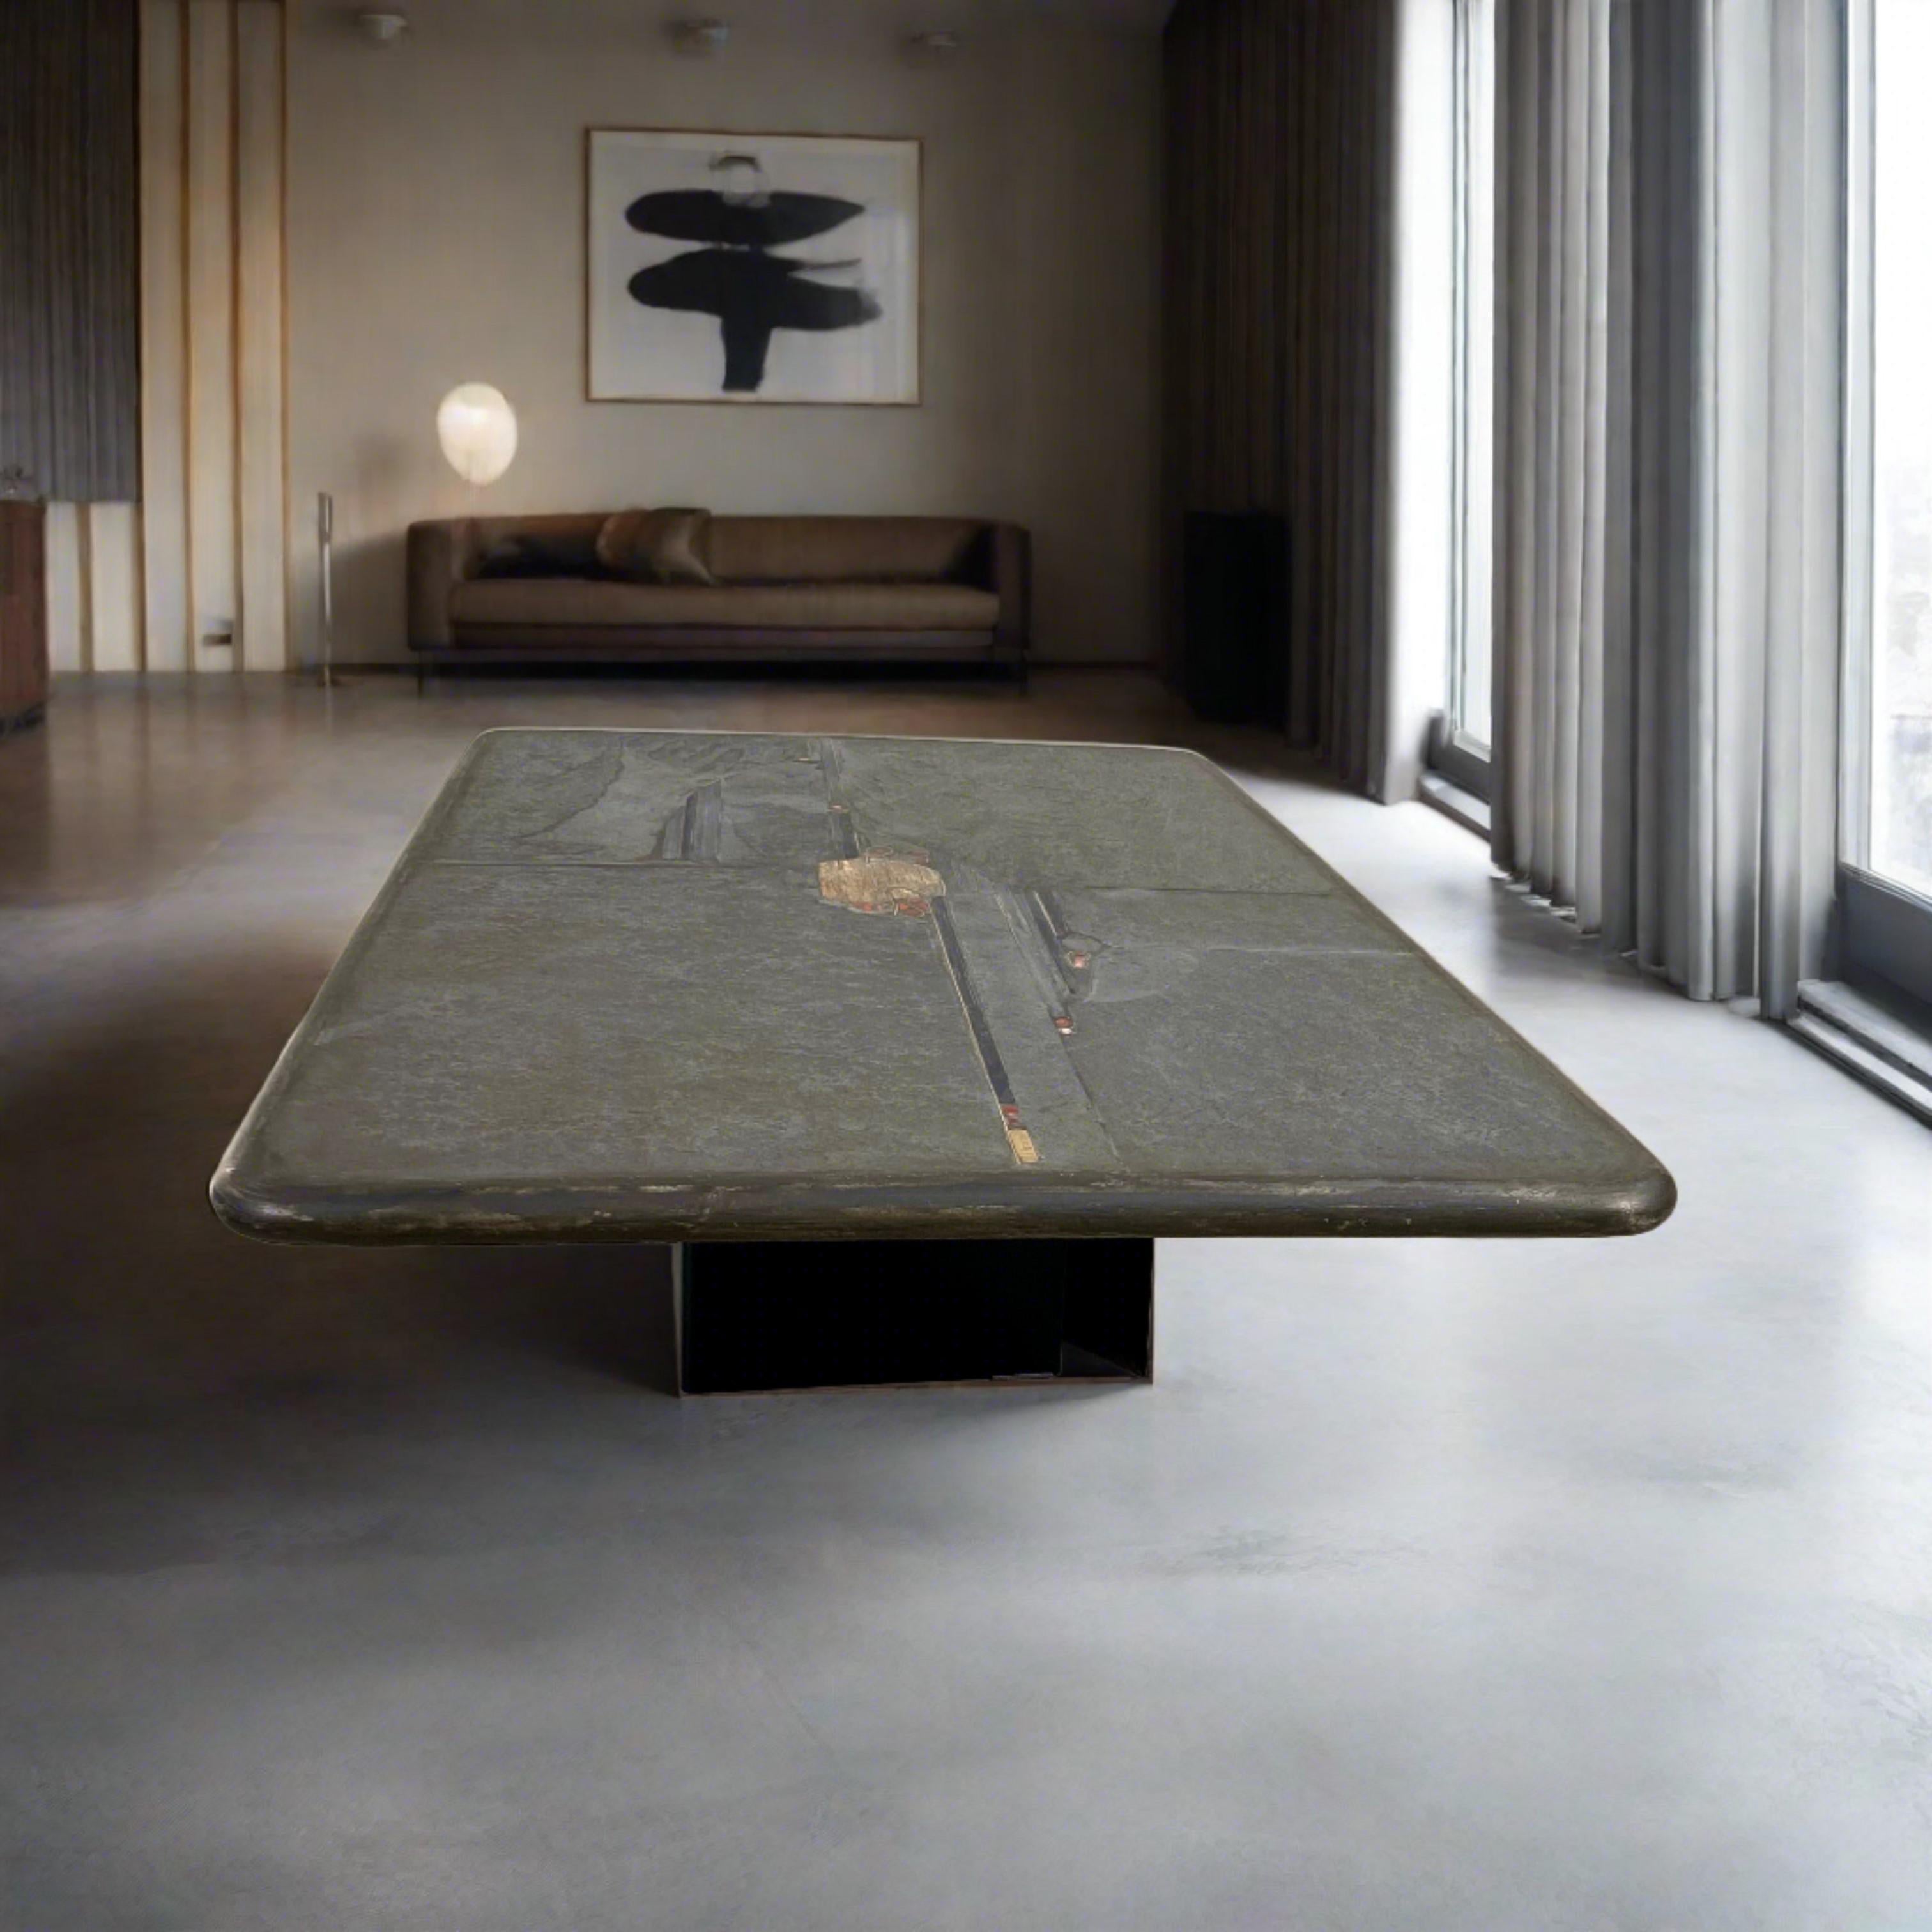 Table basse brutaliste conçue et réalisée par le sculpteur Paul Kingma († 2013), Pays-Bas 1996.

Voici la table basse ronde brutaliste du célèbre sculpteur Paul Kingma, fabriquée aux Pays-Bas en 1996. Cette pièce emblématique témoigne de